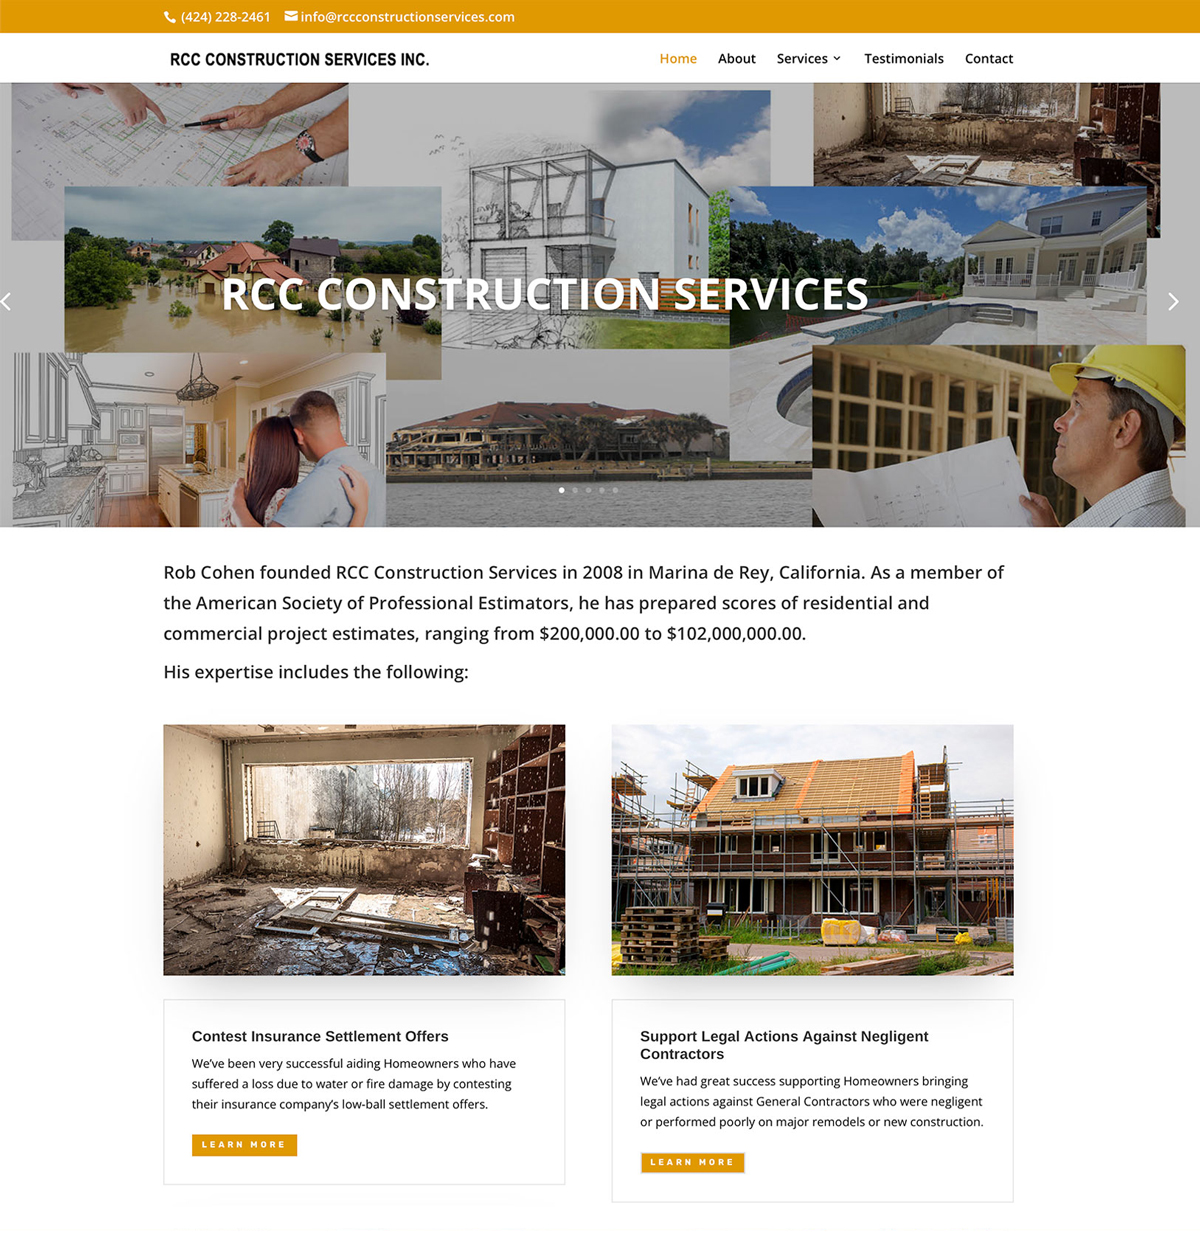 RCC Construction Services